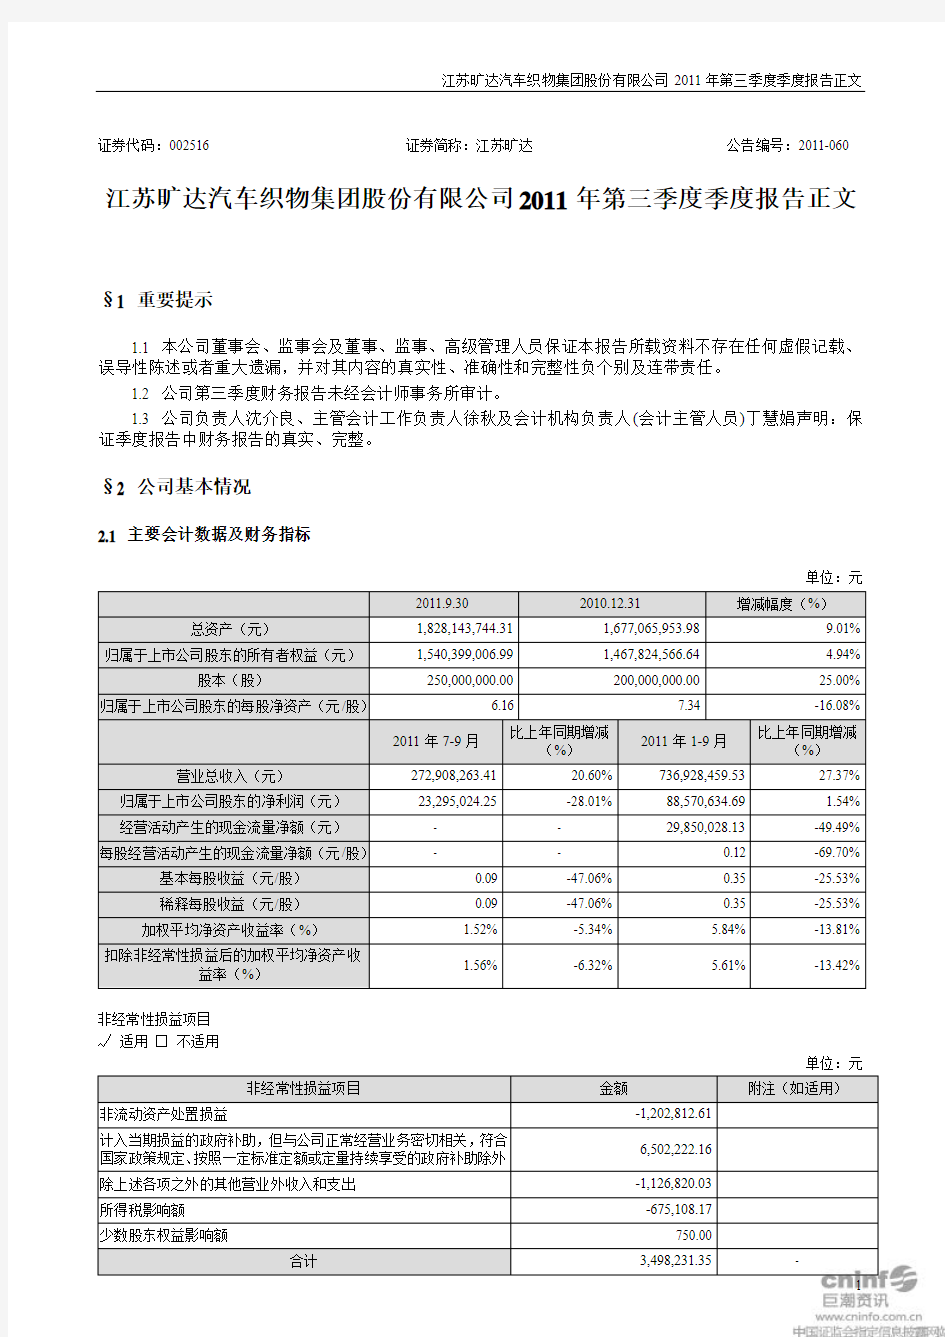 江苏旷达汽车织物集团股份有限公司2011年第三季度季度报告正文